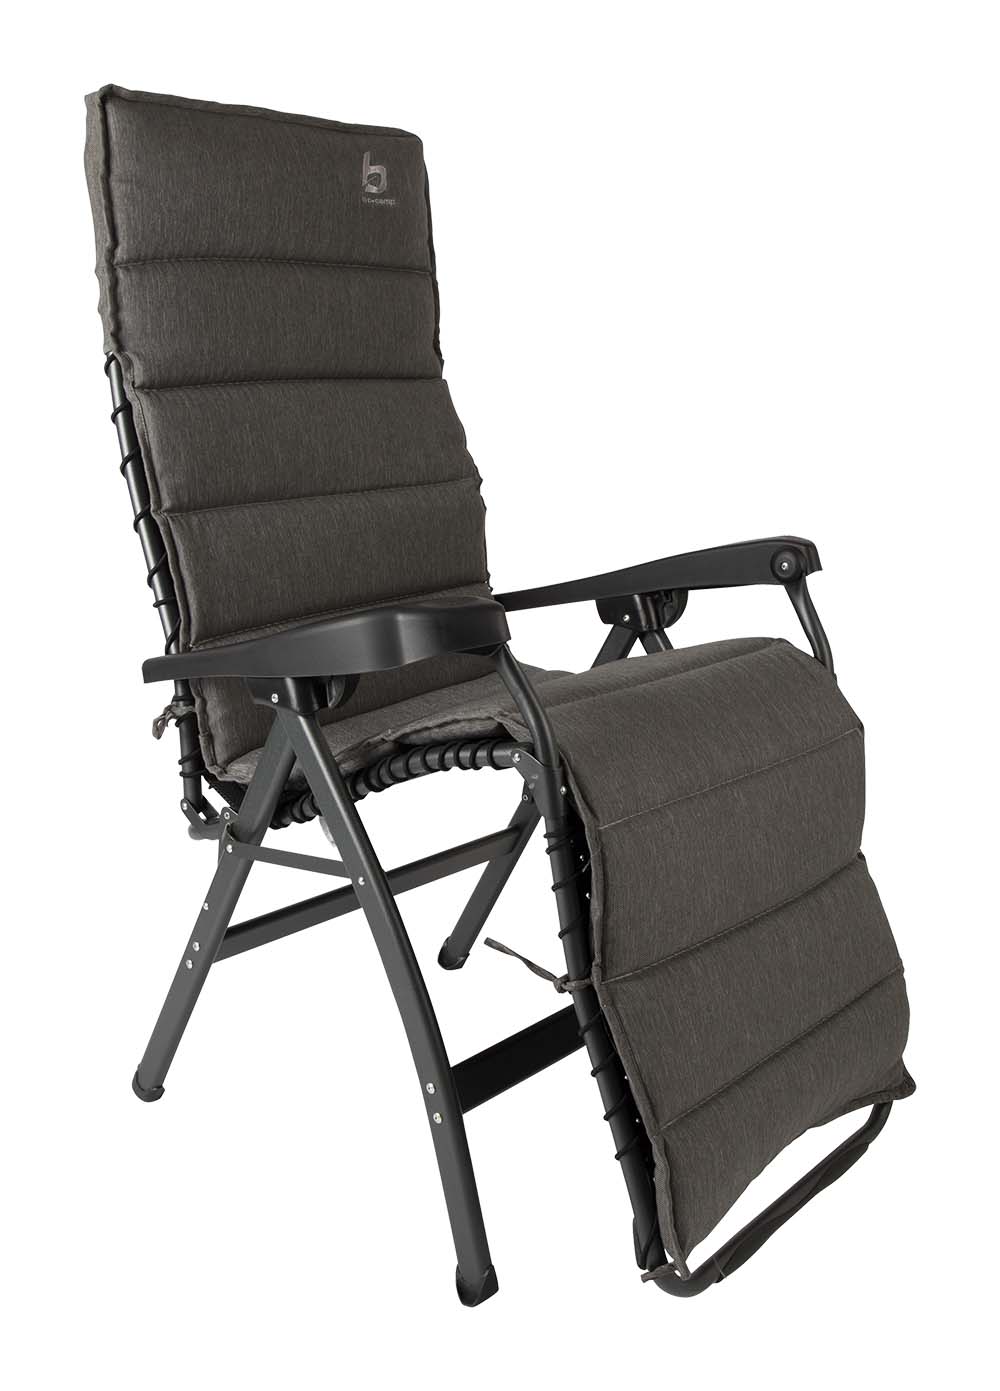 1849330 Een universele stoelhoes voor ligstoelen. Gemaakt van een zeer comfortabele Olefin stof. Deze stof maakt de stoelhoes waterafstotend en extra bestand tegen verkleuring door de zon. Daarnaast is de stoelhoes zeer onderhoudsvriendelijk en heeft het een lange levensduur. Inclusief koordje om de stoelhoes passend te maken op elk formaat relaxstoel.